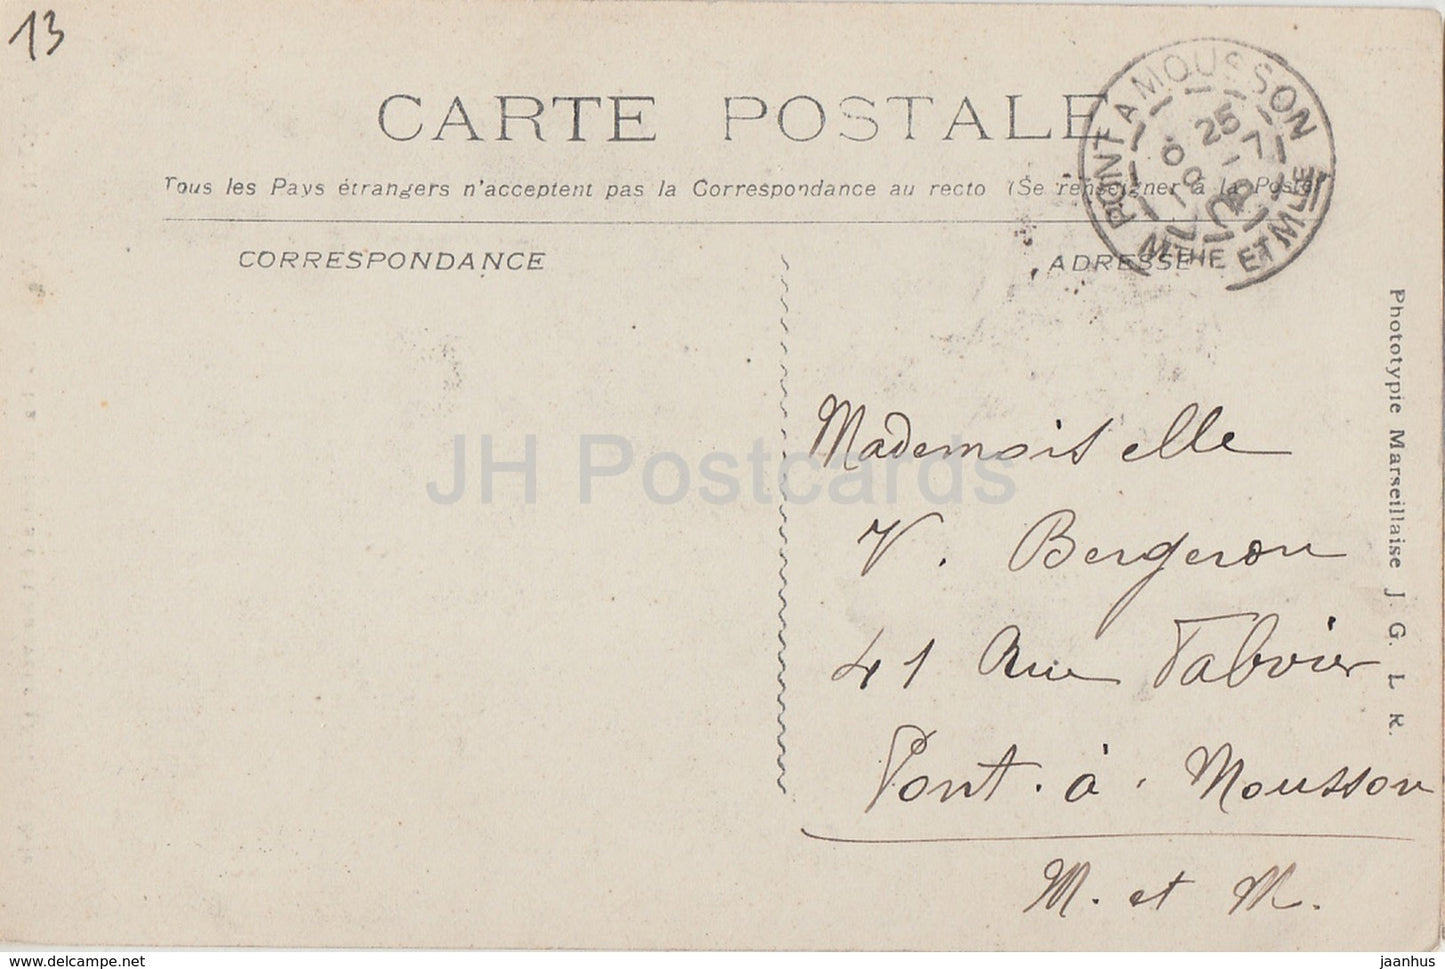 Aix En Provence - La Cathédrale St Sauveur - cathédrale - 859 - carte postale ancienne - 1908 - France - utilisé